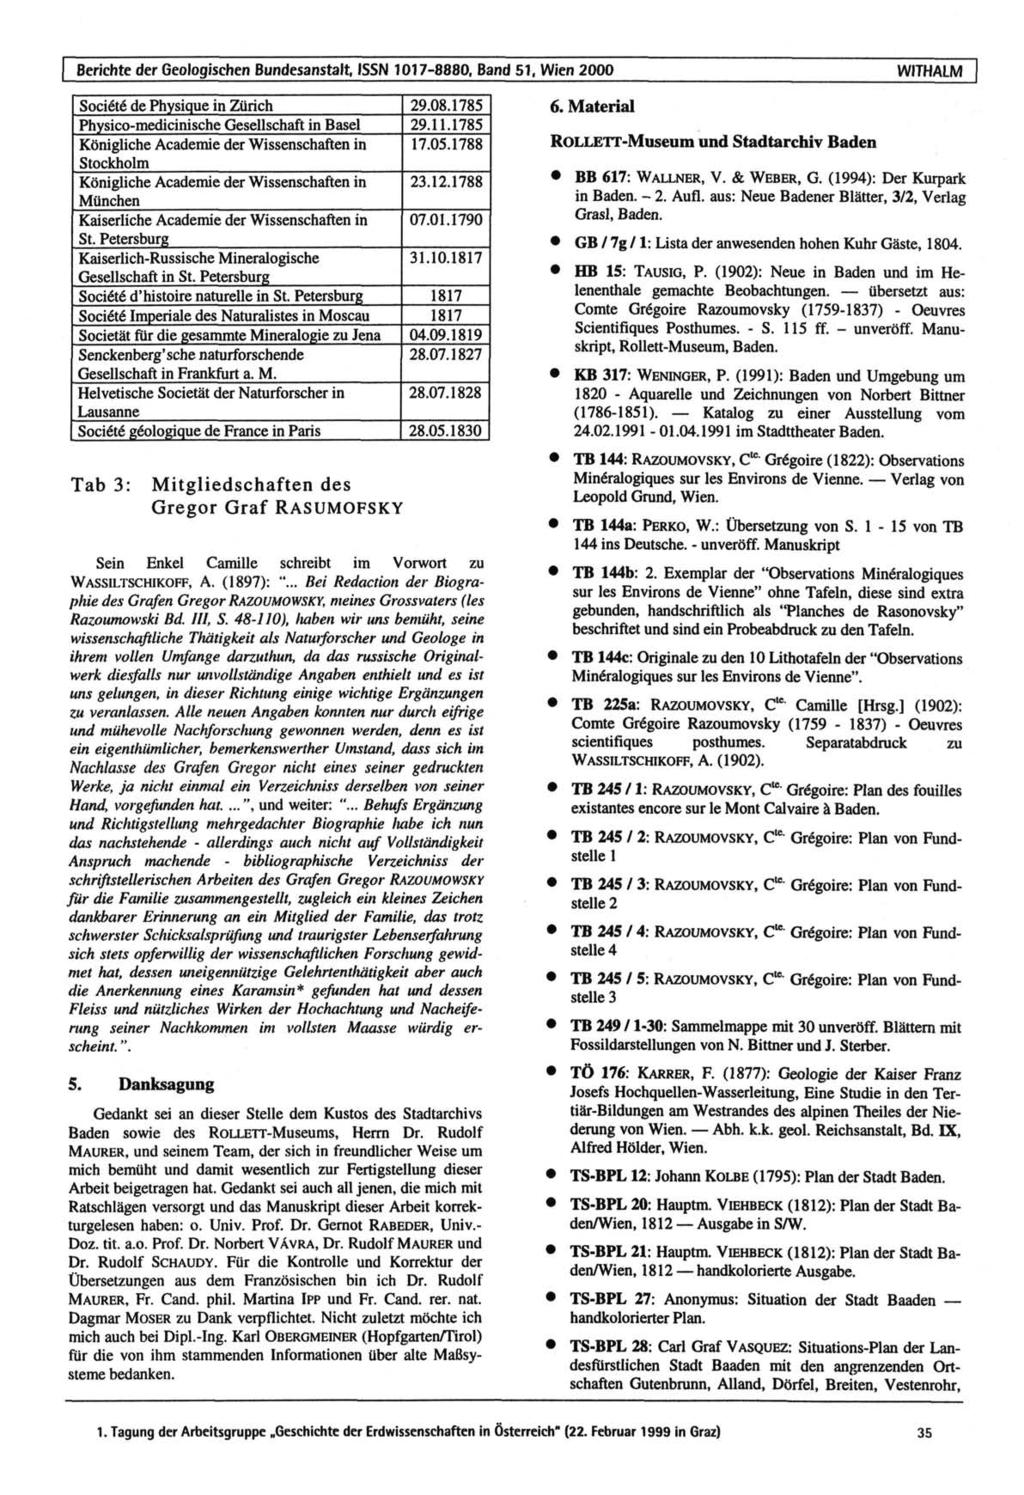 Berichte der Geologischen Bundesanstalt, ISSN 1017-8880, Band 51. Wien 2000 WITHALM Societe de Physique in Zürich 29.08.1785 Physico-medicinische Gesellschaft in Basel 29.11.